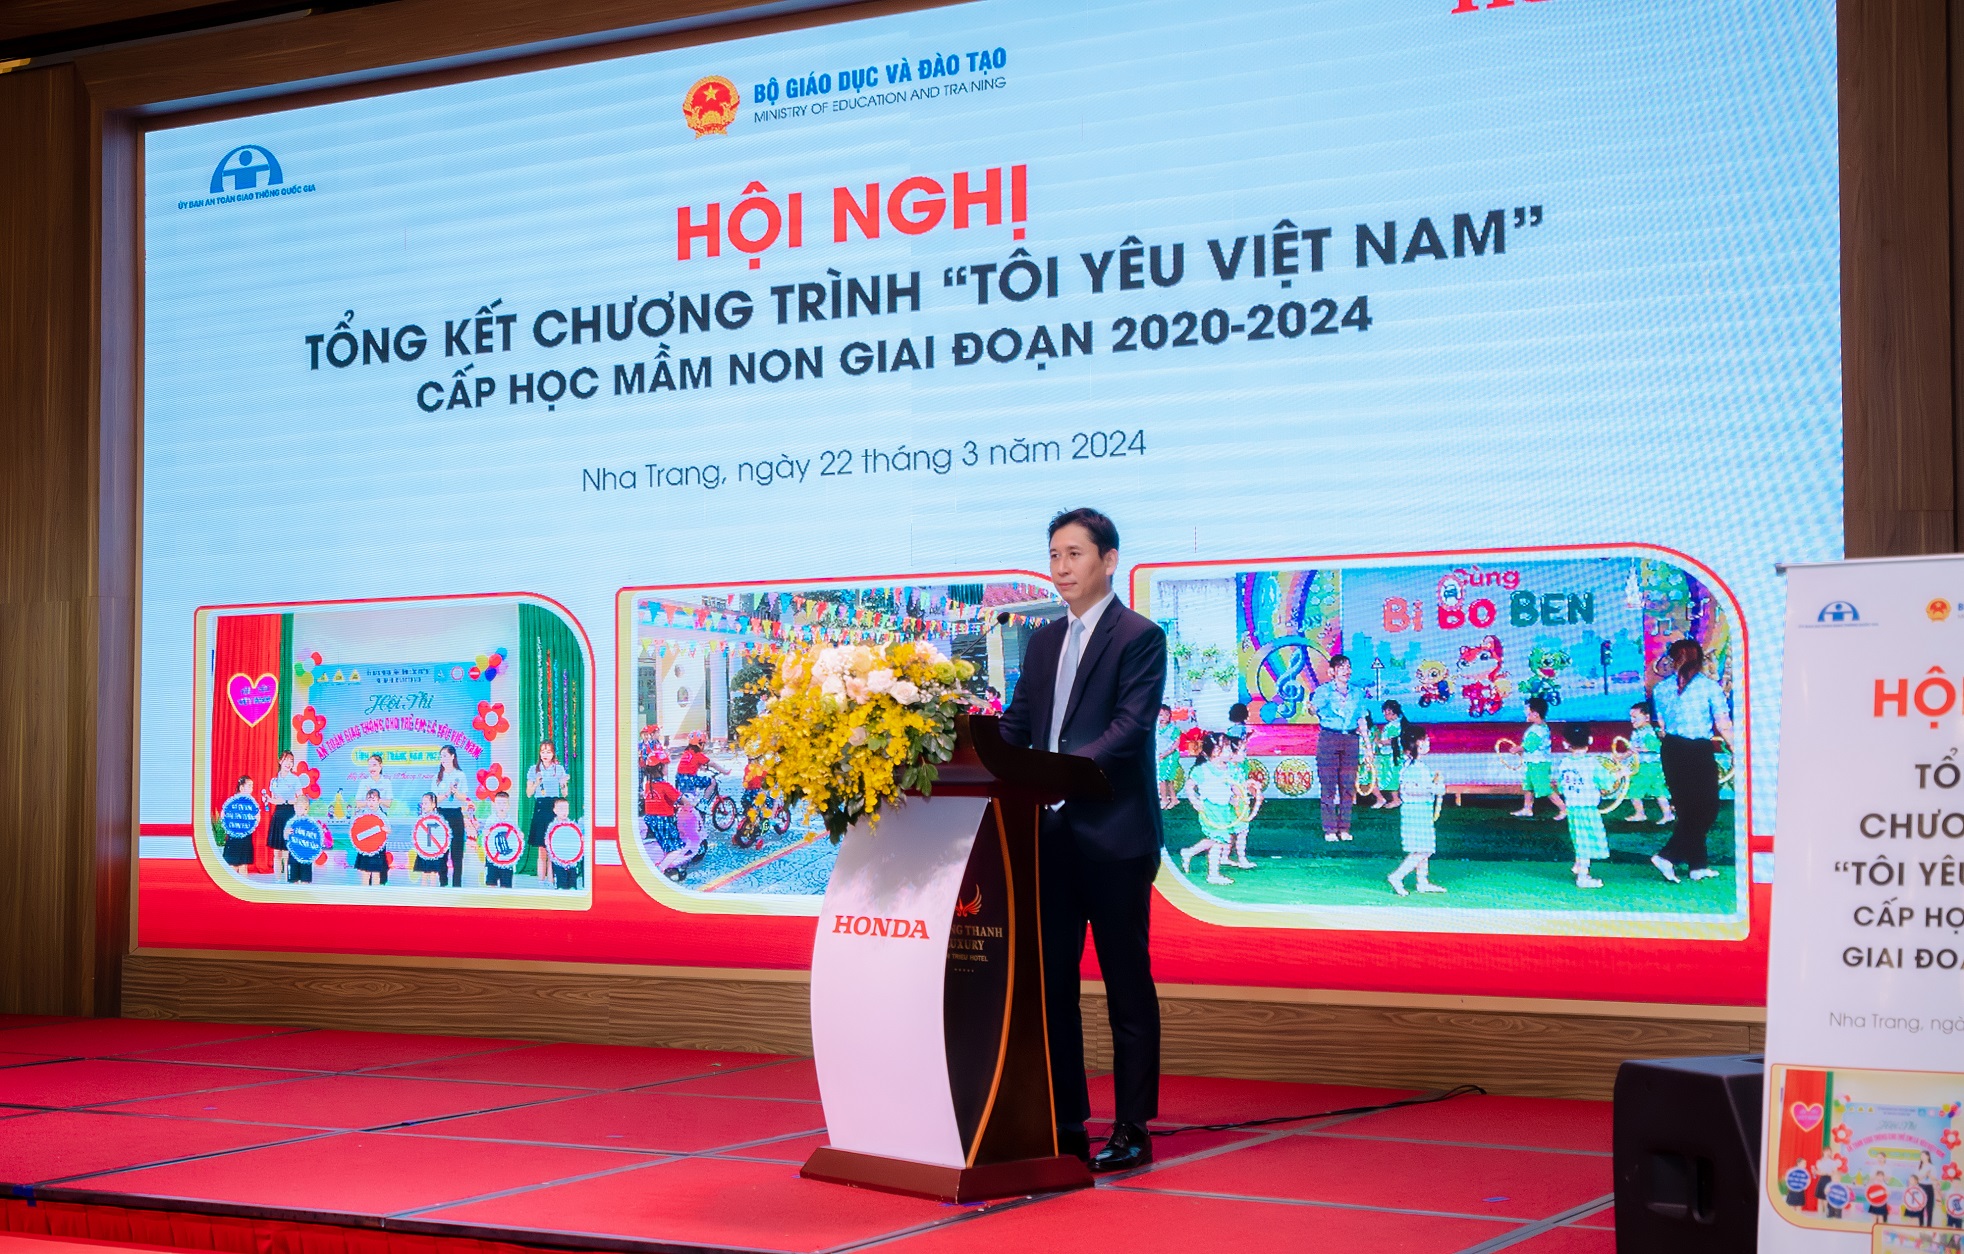 Honda Việt Nam tổ chức Hội nghị tổng kết chương trình “Tôi yêu Việt Nam” trong cấp học mầm non giai đoạn 2020-2024